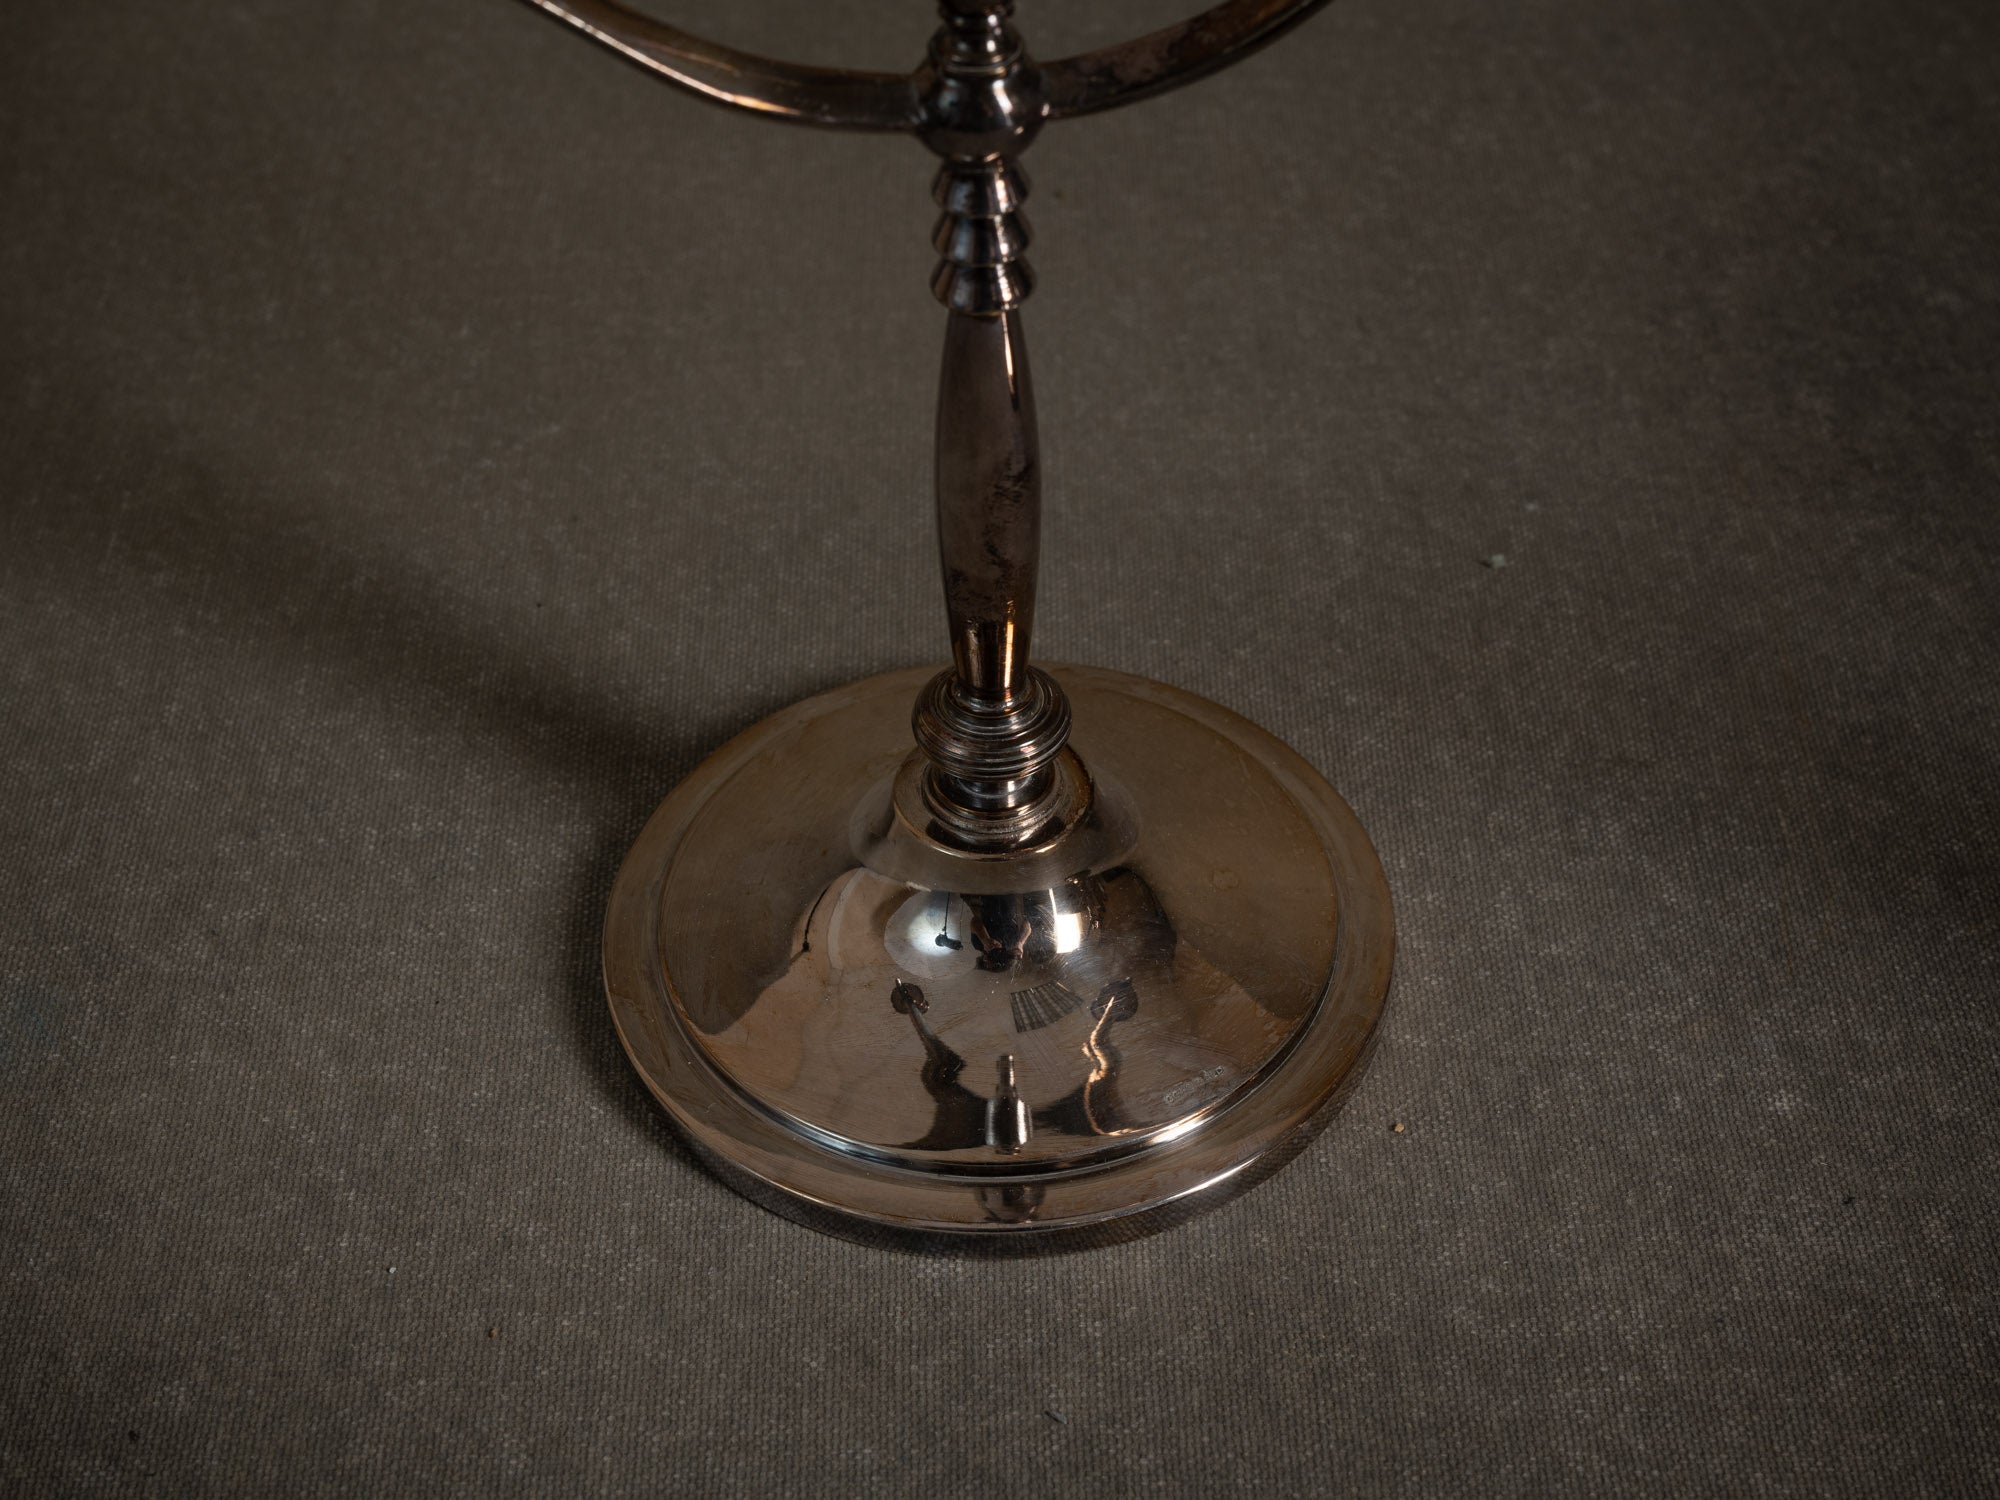 Paire de chandeliers "grâce suédoise" Elis Bergh pour C.G. Hallberg, Suède (années 1920)..Set of 2 "swedish grace" candle holders /candelabras by C.G. Hallberg, Sweden (1920's)